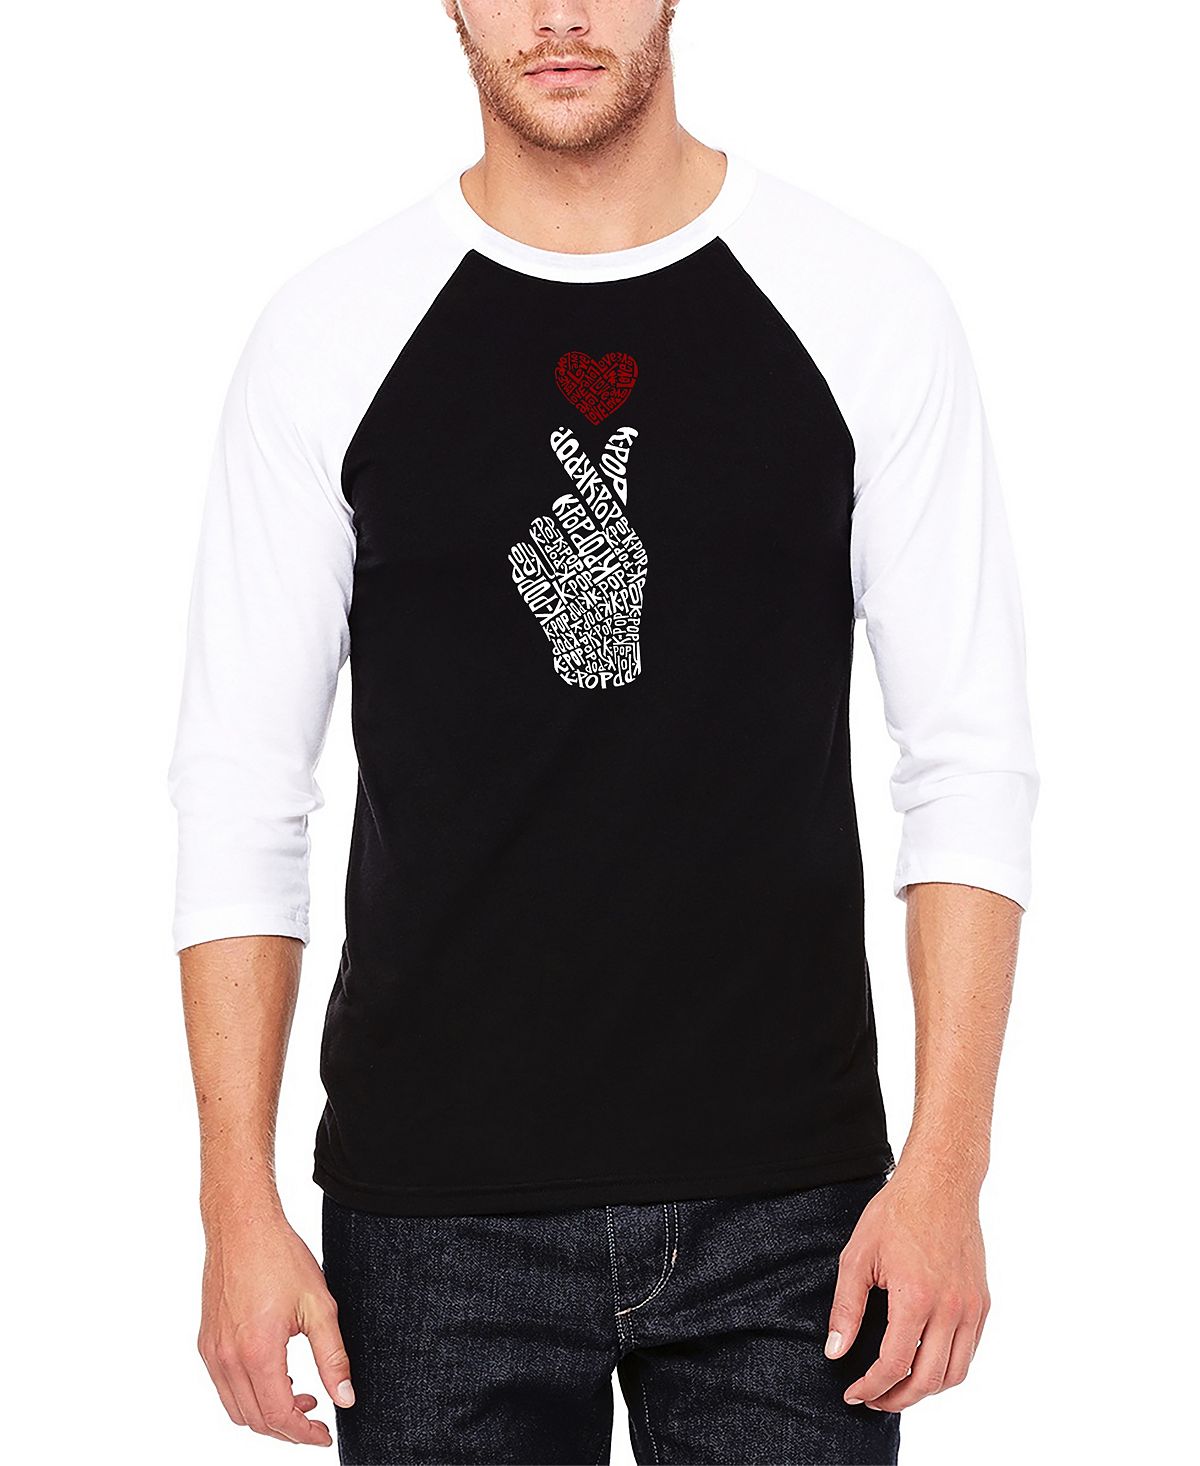 Мужская бейсбольная футболка реглан с рукавом 3/4 k-pop word art футболка LA Pop Art, черно-белый